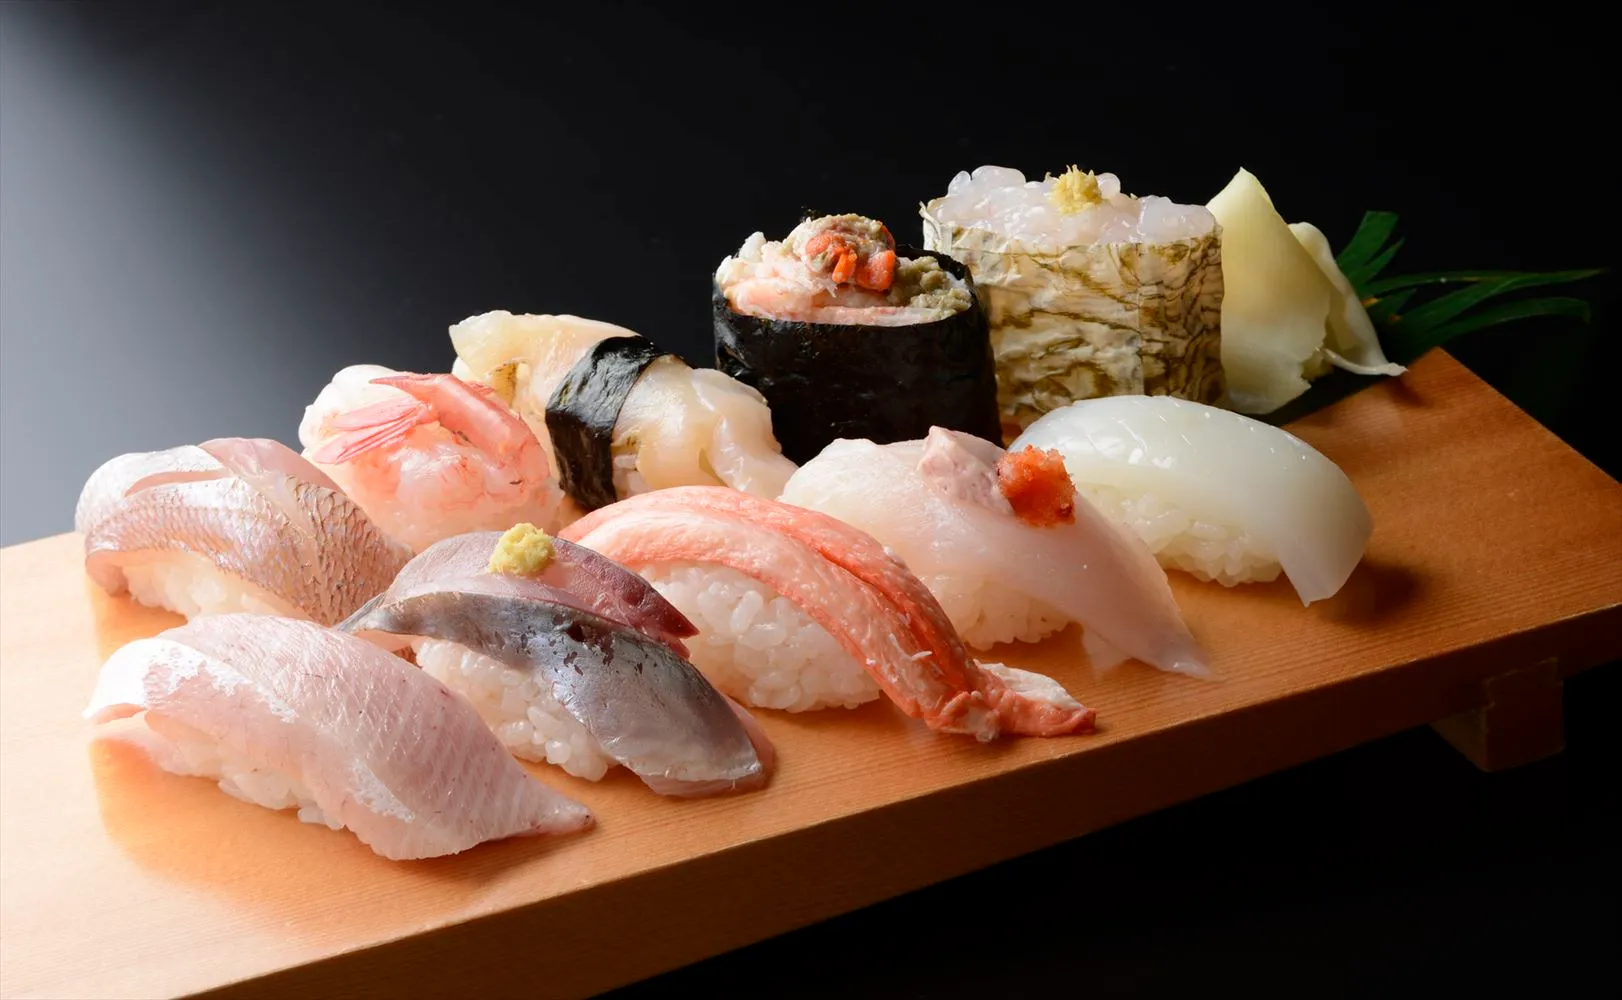 Toyama Bay Sushi